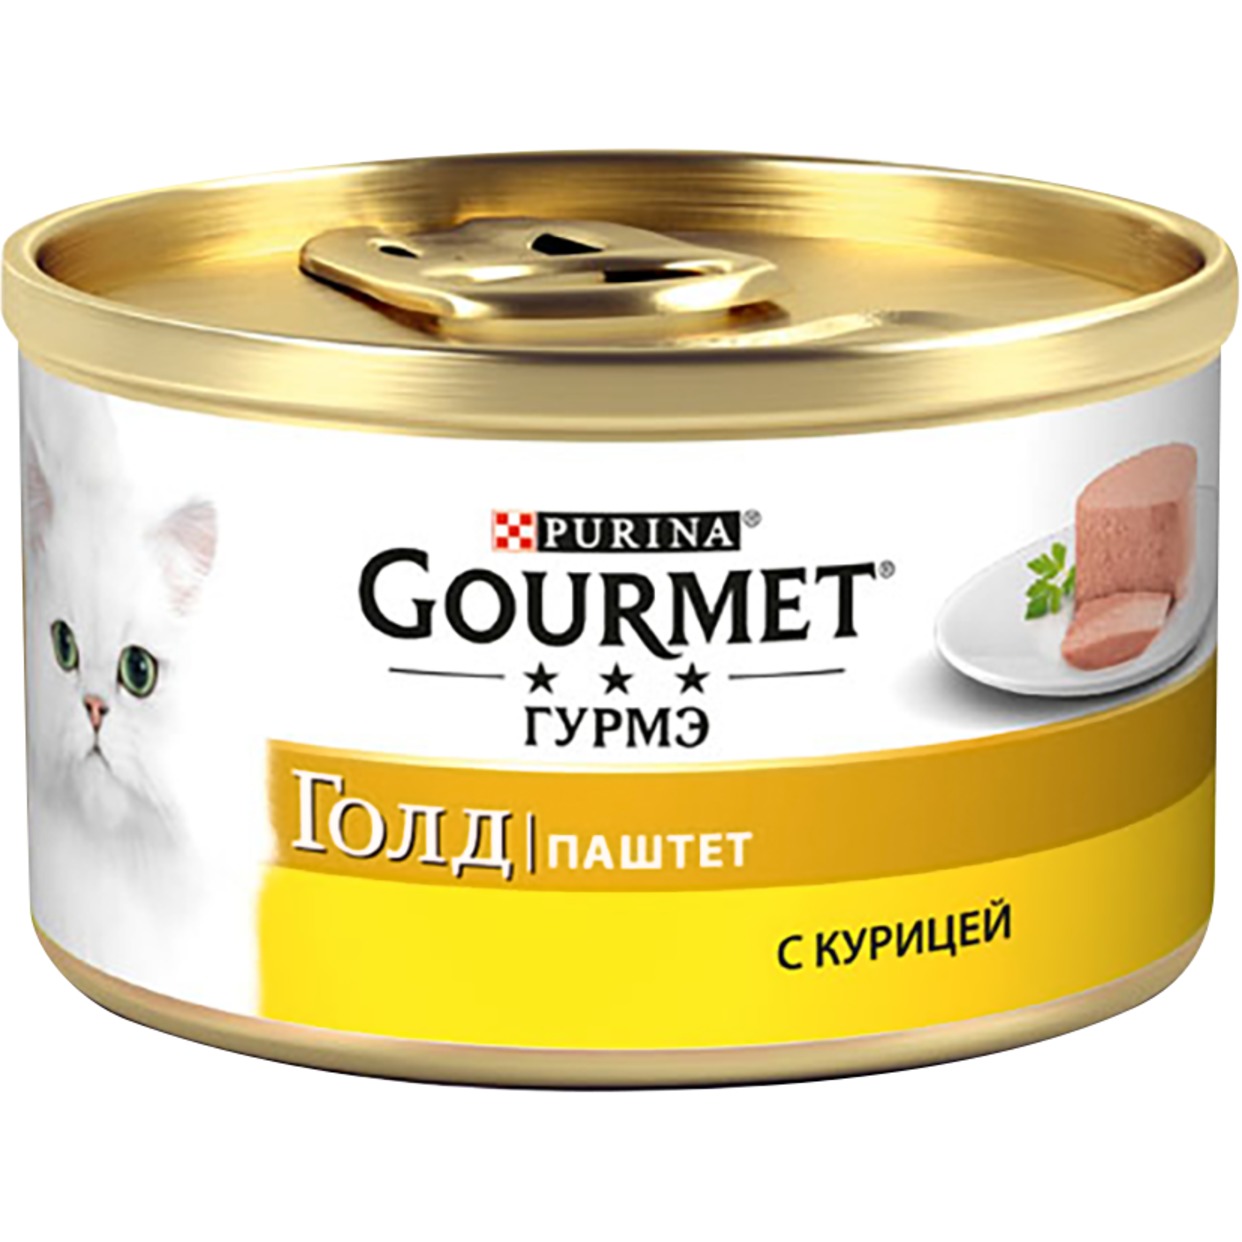 Корм Gourmet Gold Паштет с курицей для кошек 85г по акции в Пятерочке